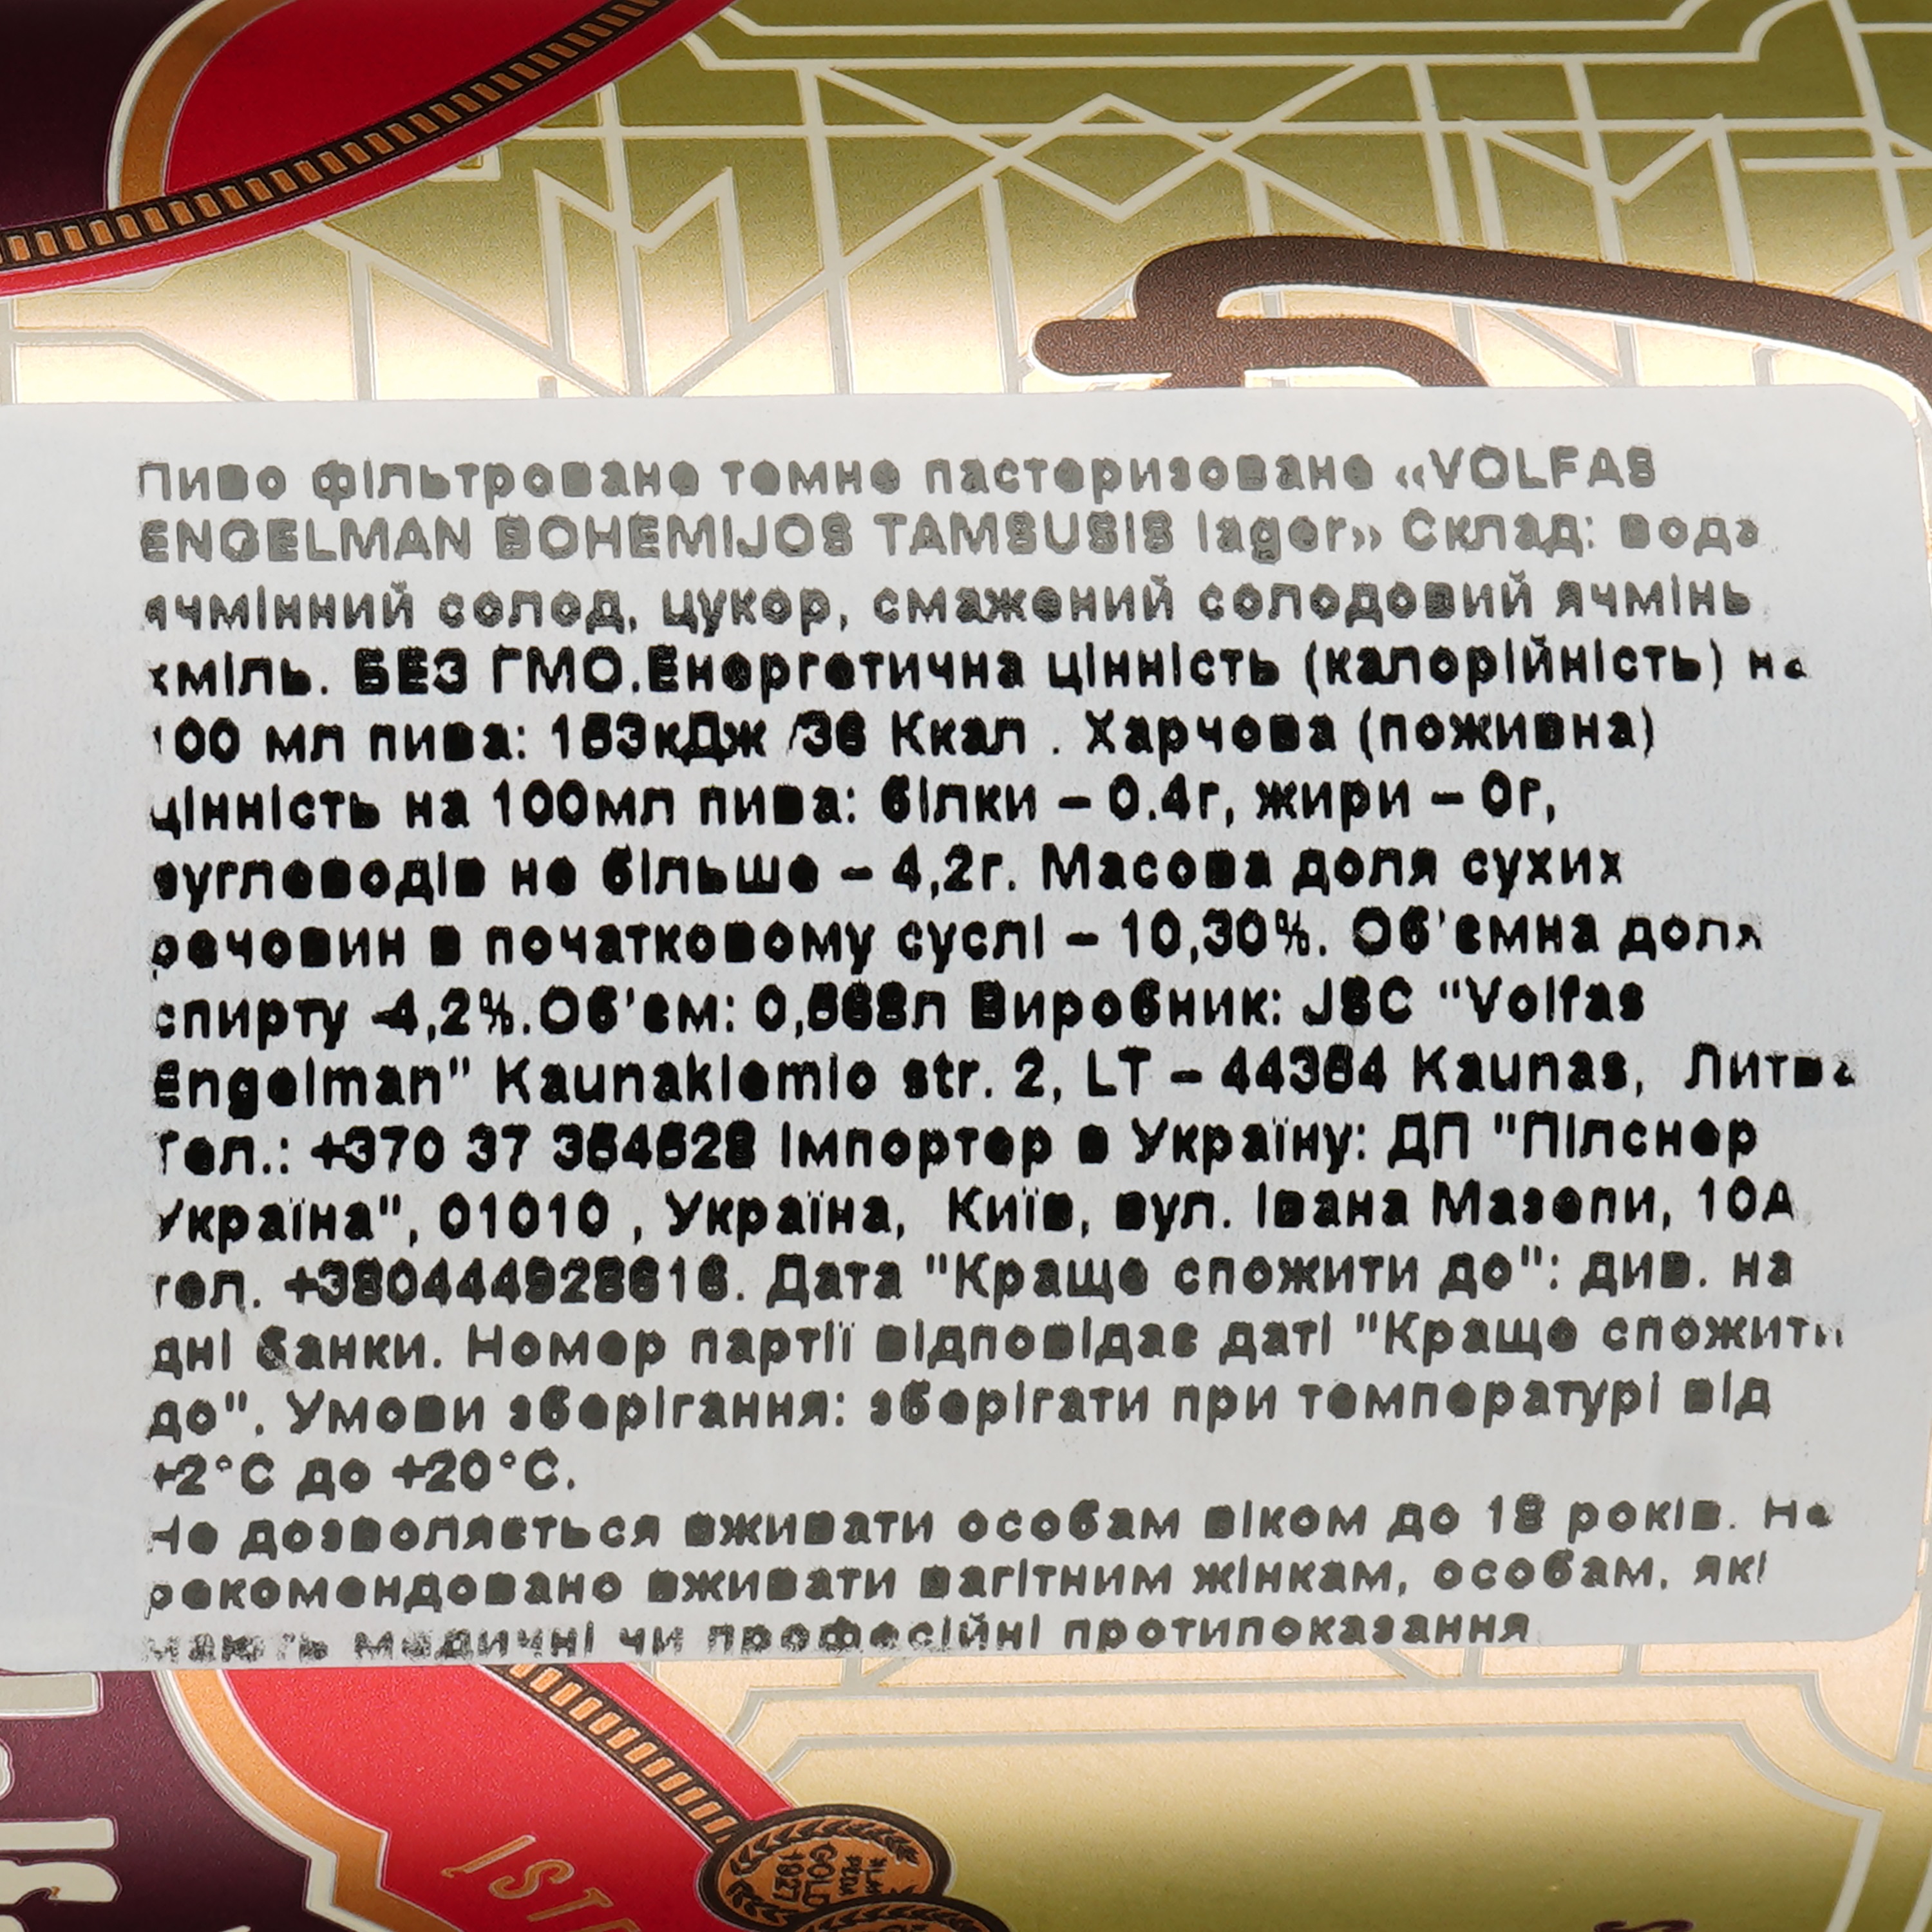 Пиво Volfas Engelman Bohemijos Dark темное, 4.2%, ж/б, 0.568 л - фото 4